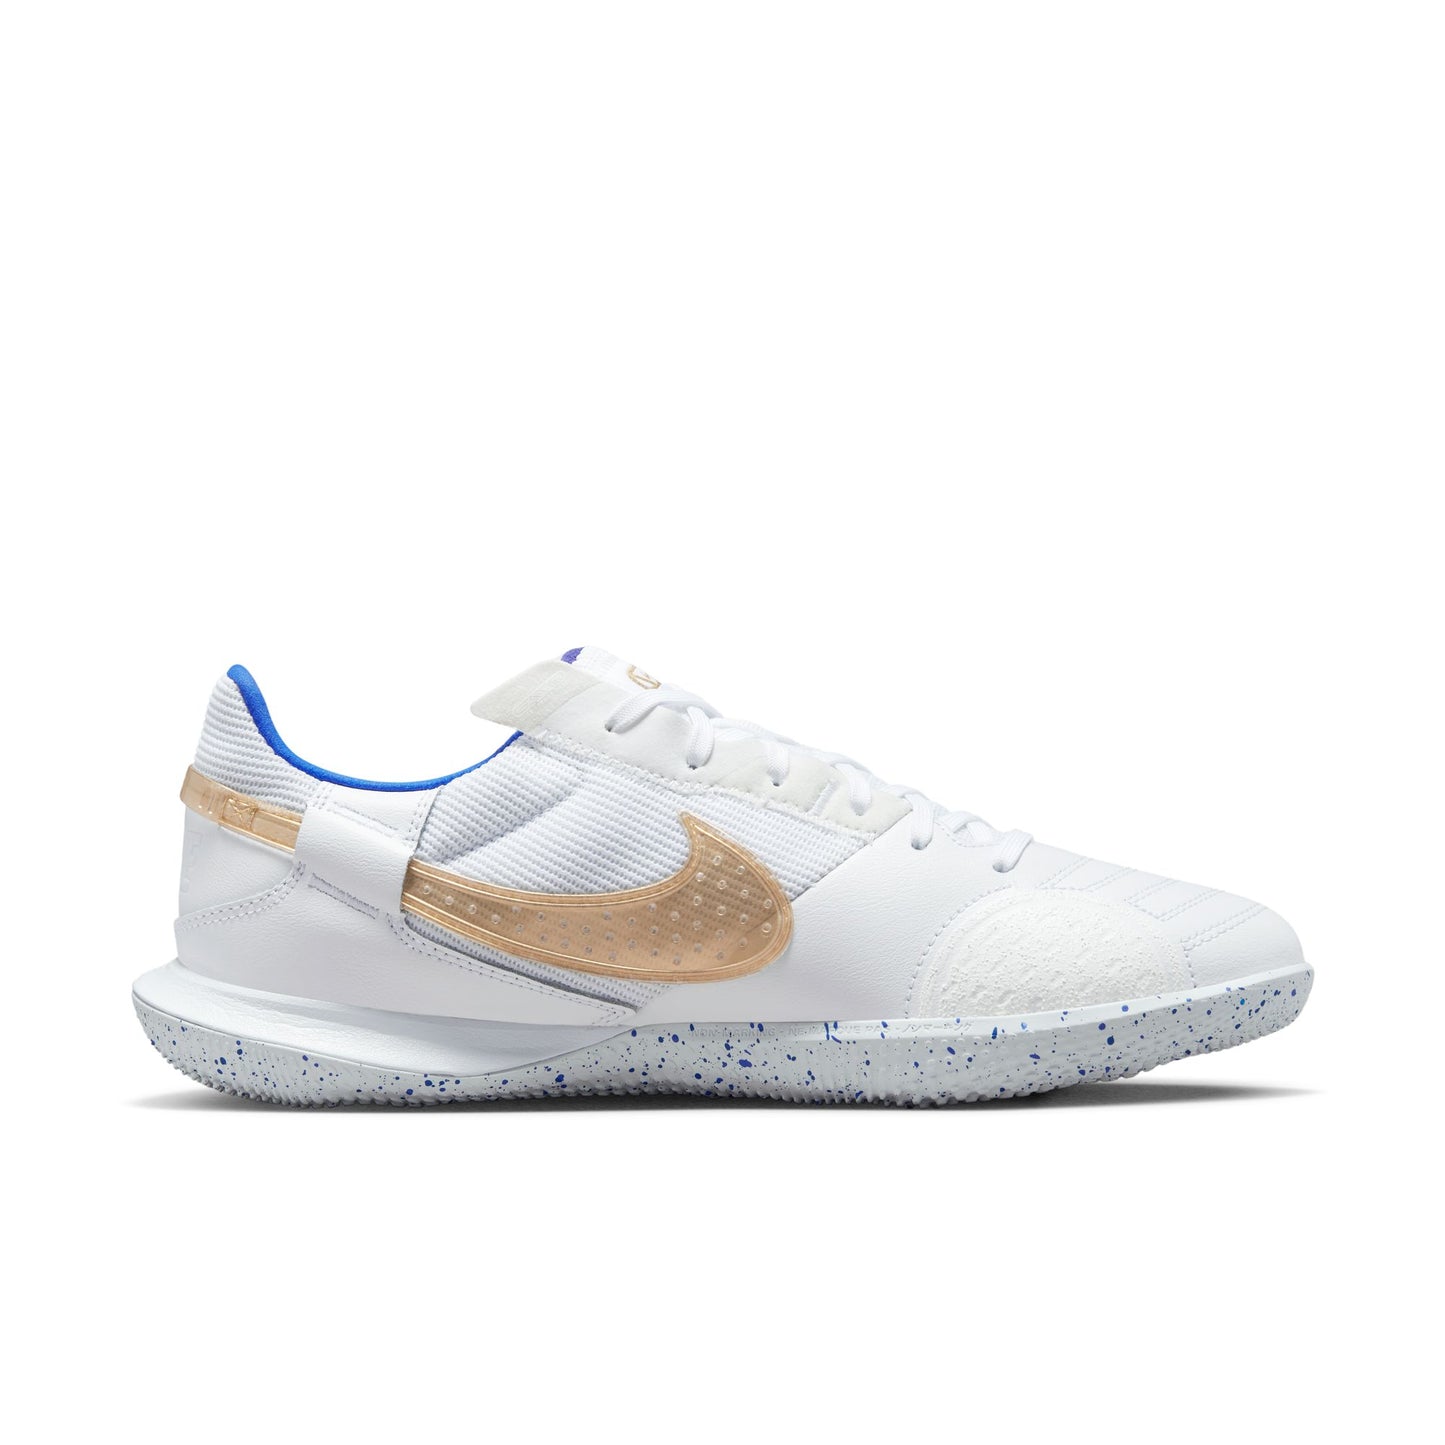 Nike Streetgato IC [White/Gold/Royal]